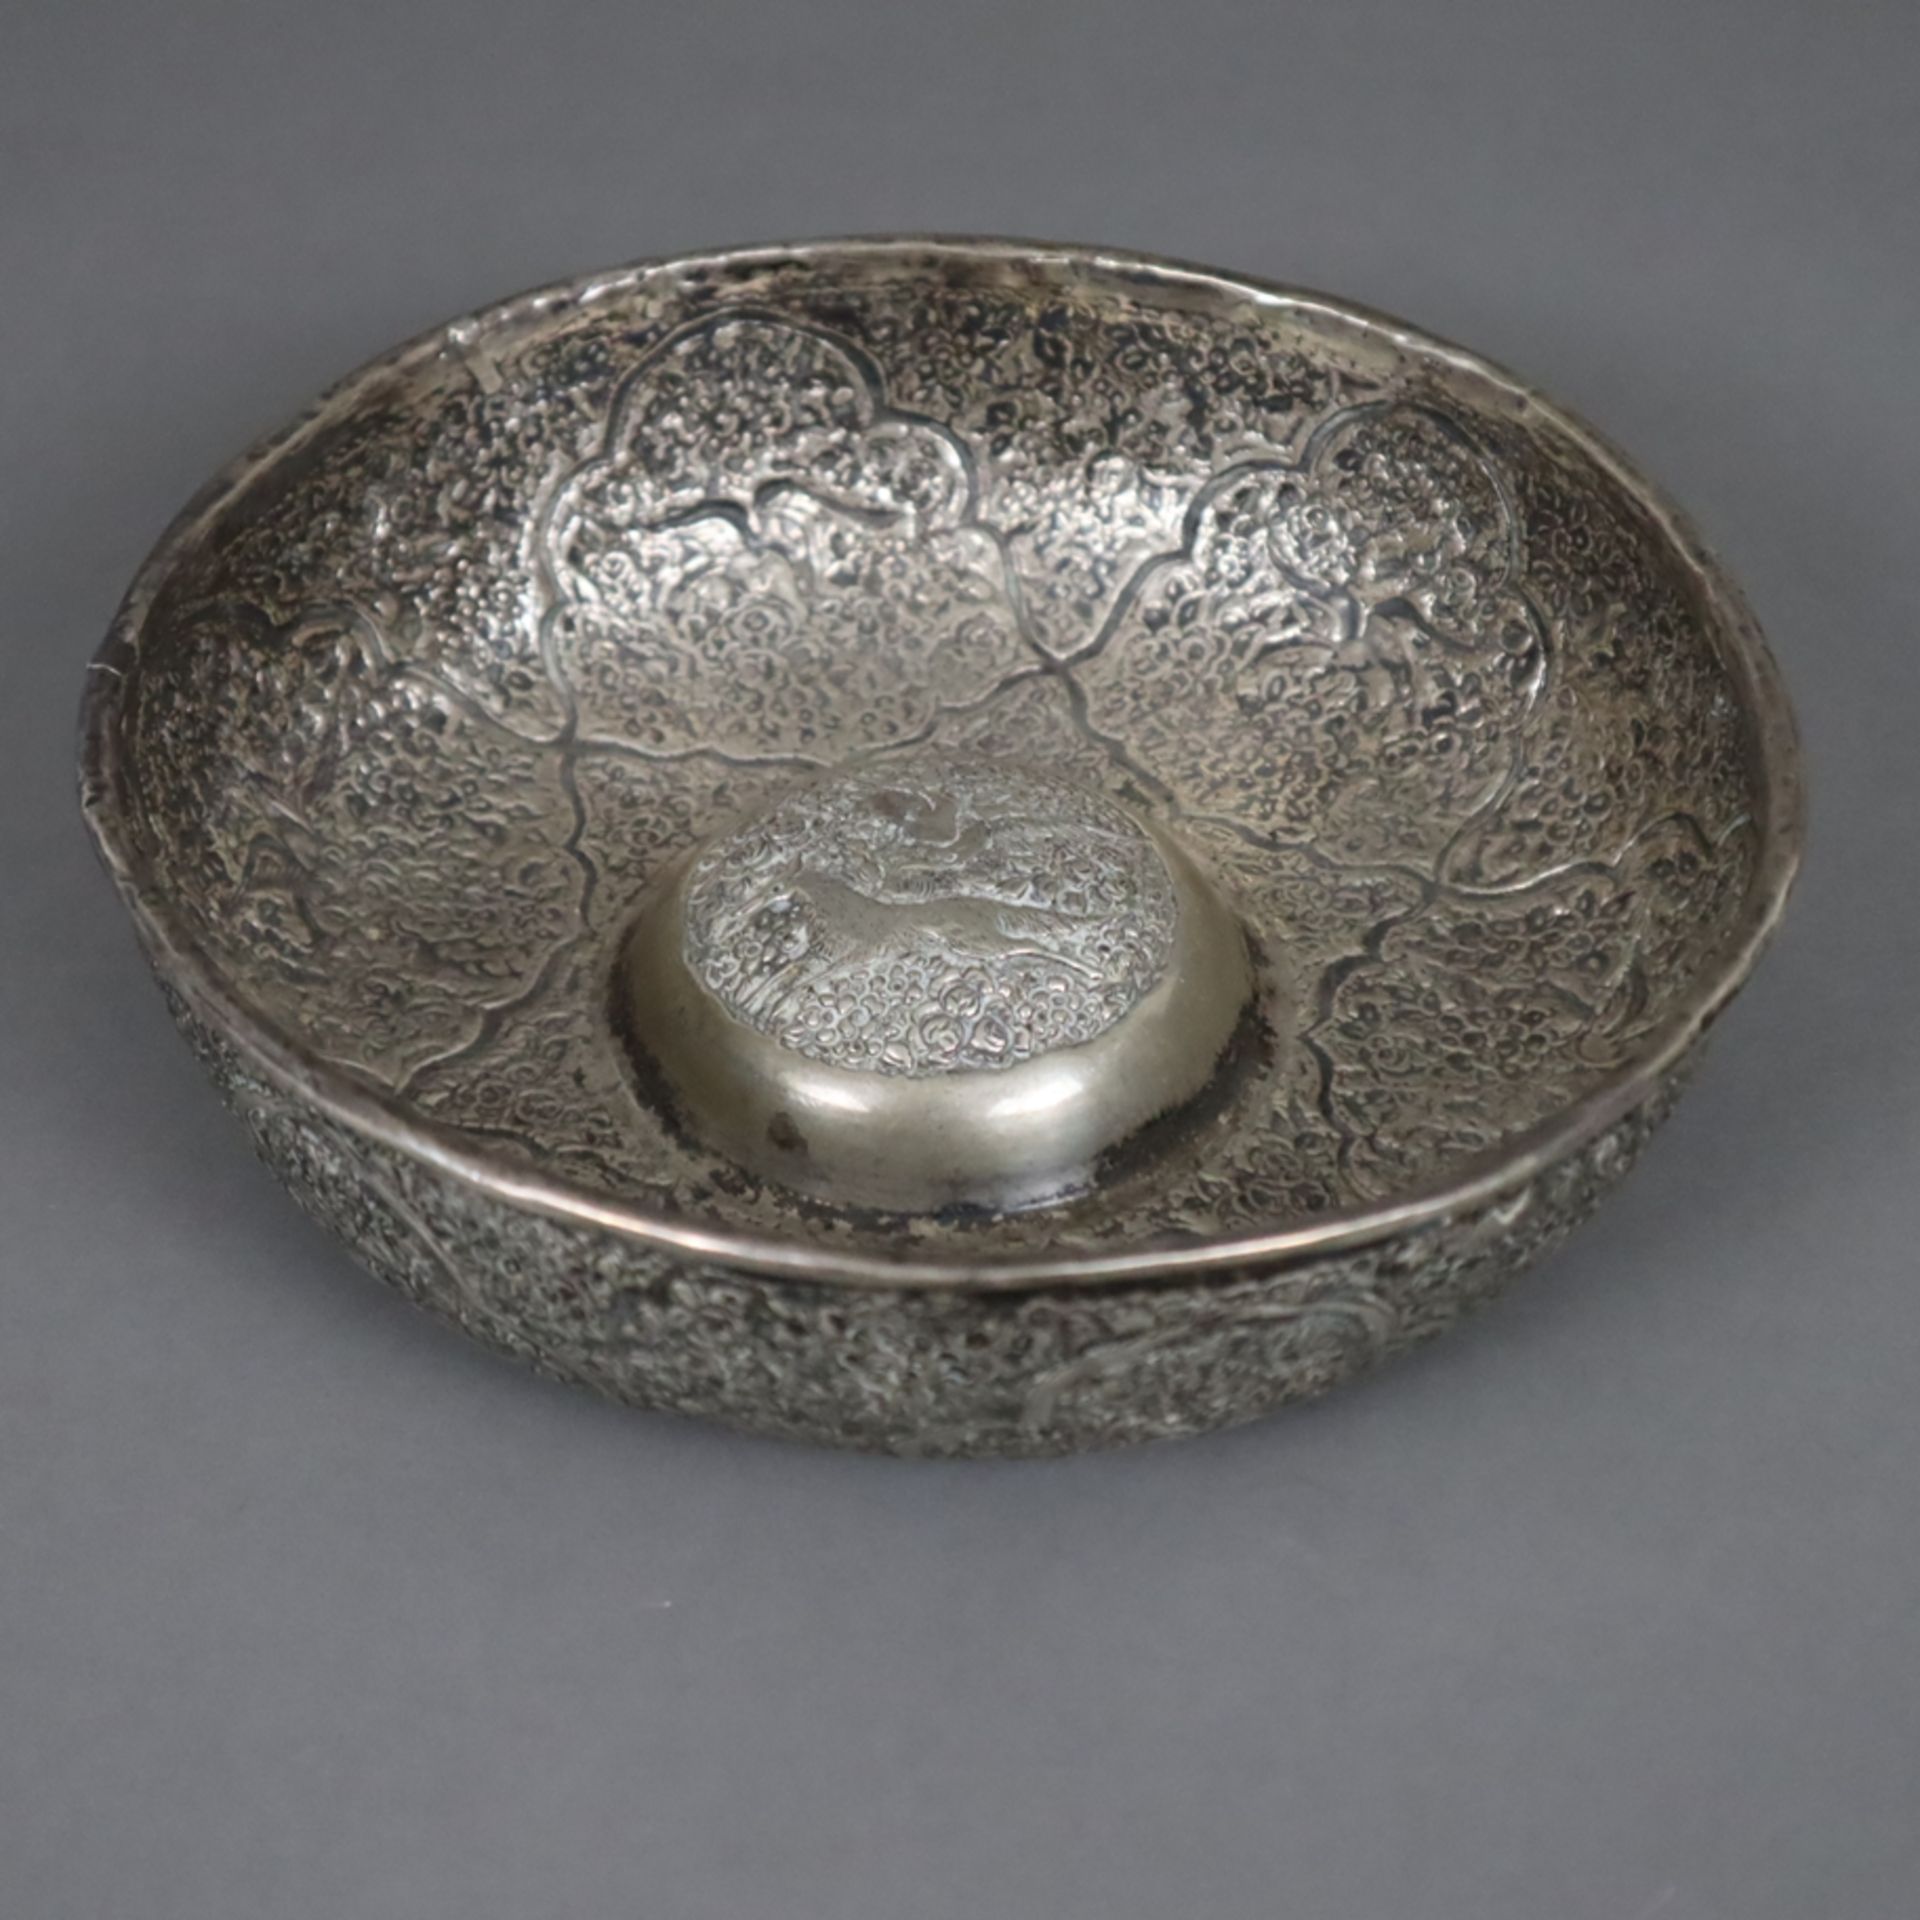 Silberschale - runde hochwandige Form mit gewölbter Mitte, orientalischer Dekor mit floralen Orname